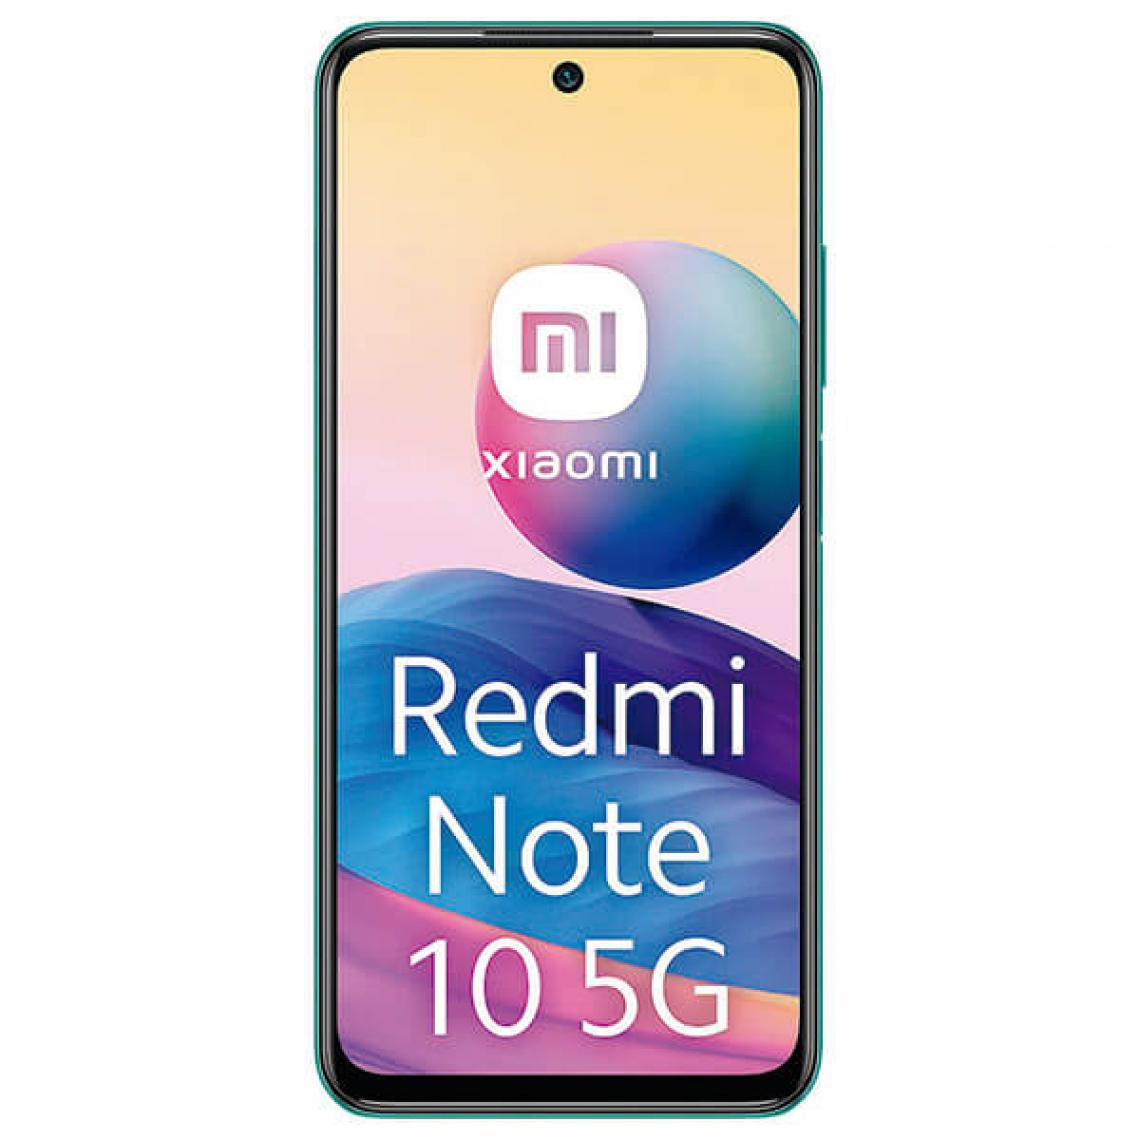 XIAOMI - Xiaomi Redmi Note 10 5G 4 Go / 128 Go Vert (Vert Aurora) Double SIM M2103K19G - Smartphone Android